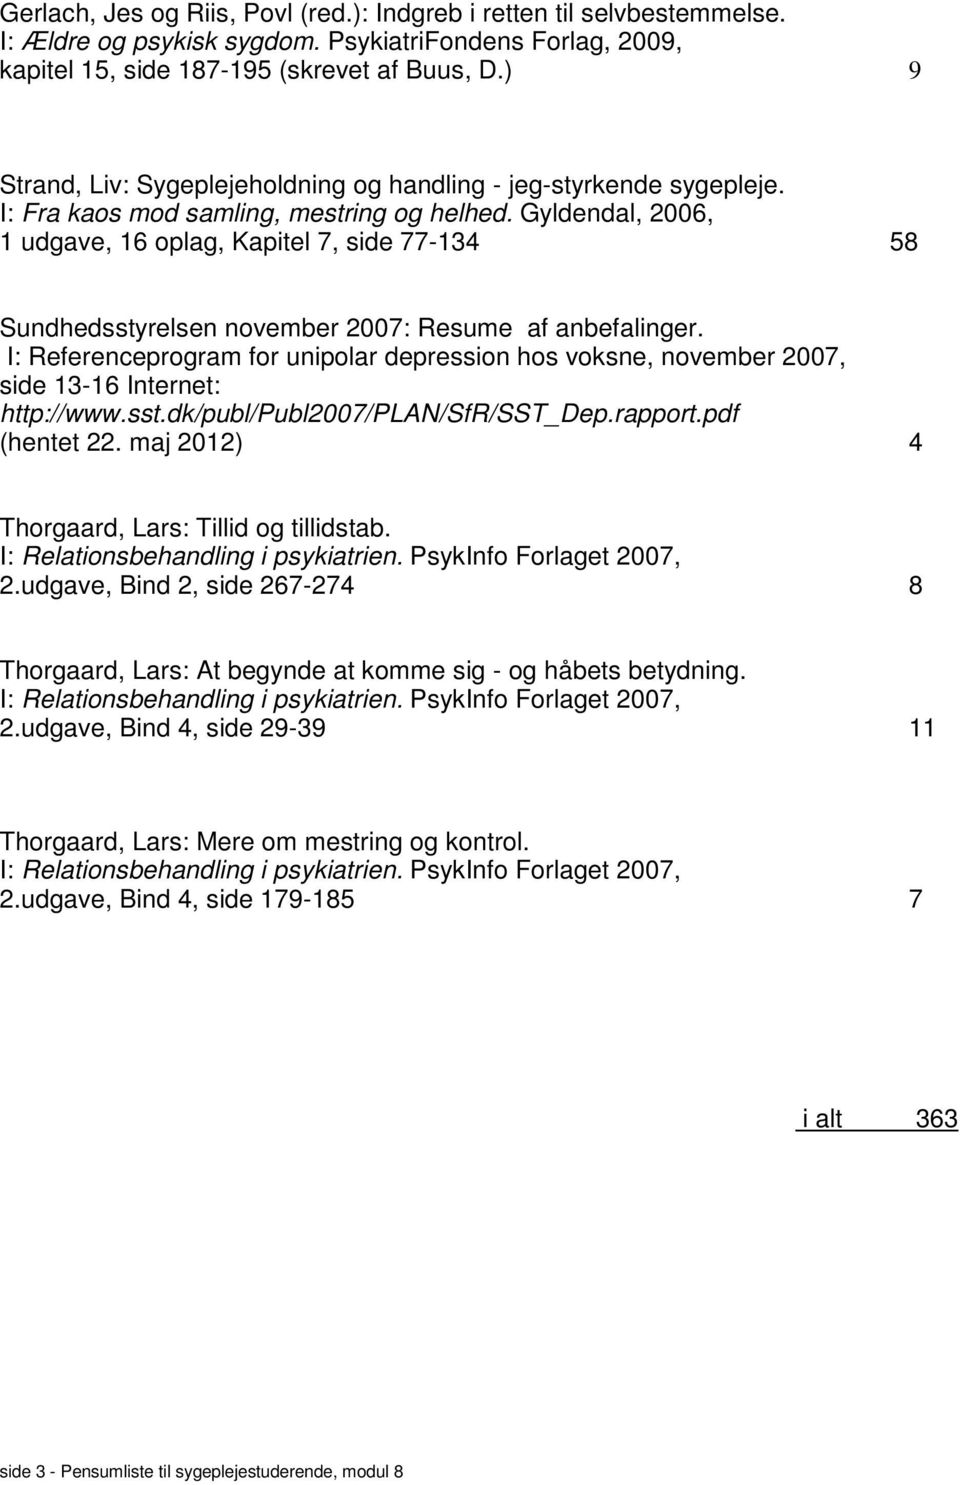 I: Referenceprogram for unipolar depression hos voksne, november 2007, side 13-16 Internet: http://www.sst.dk/publ/publ2007/plan/sfr/sst_dep.rapport.pdf (hentet 22.